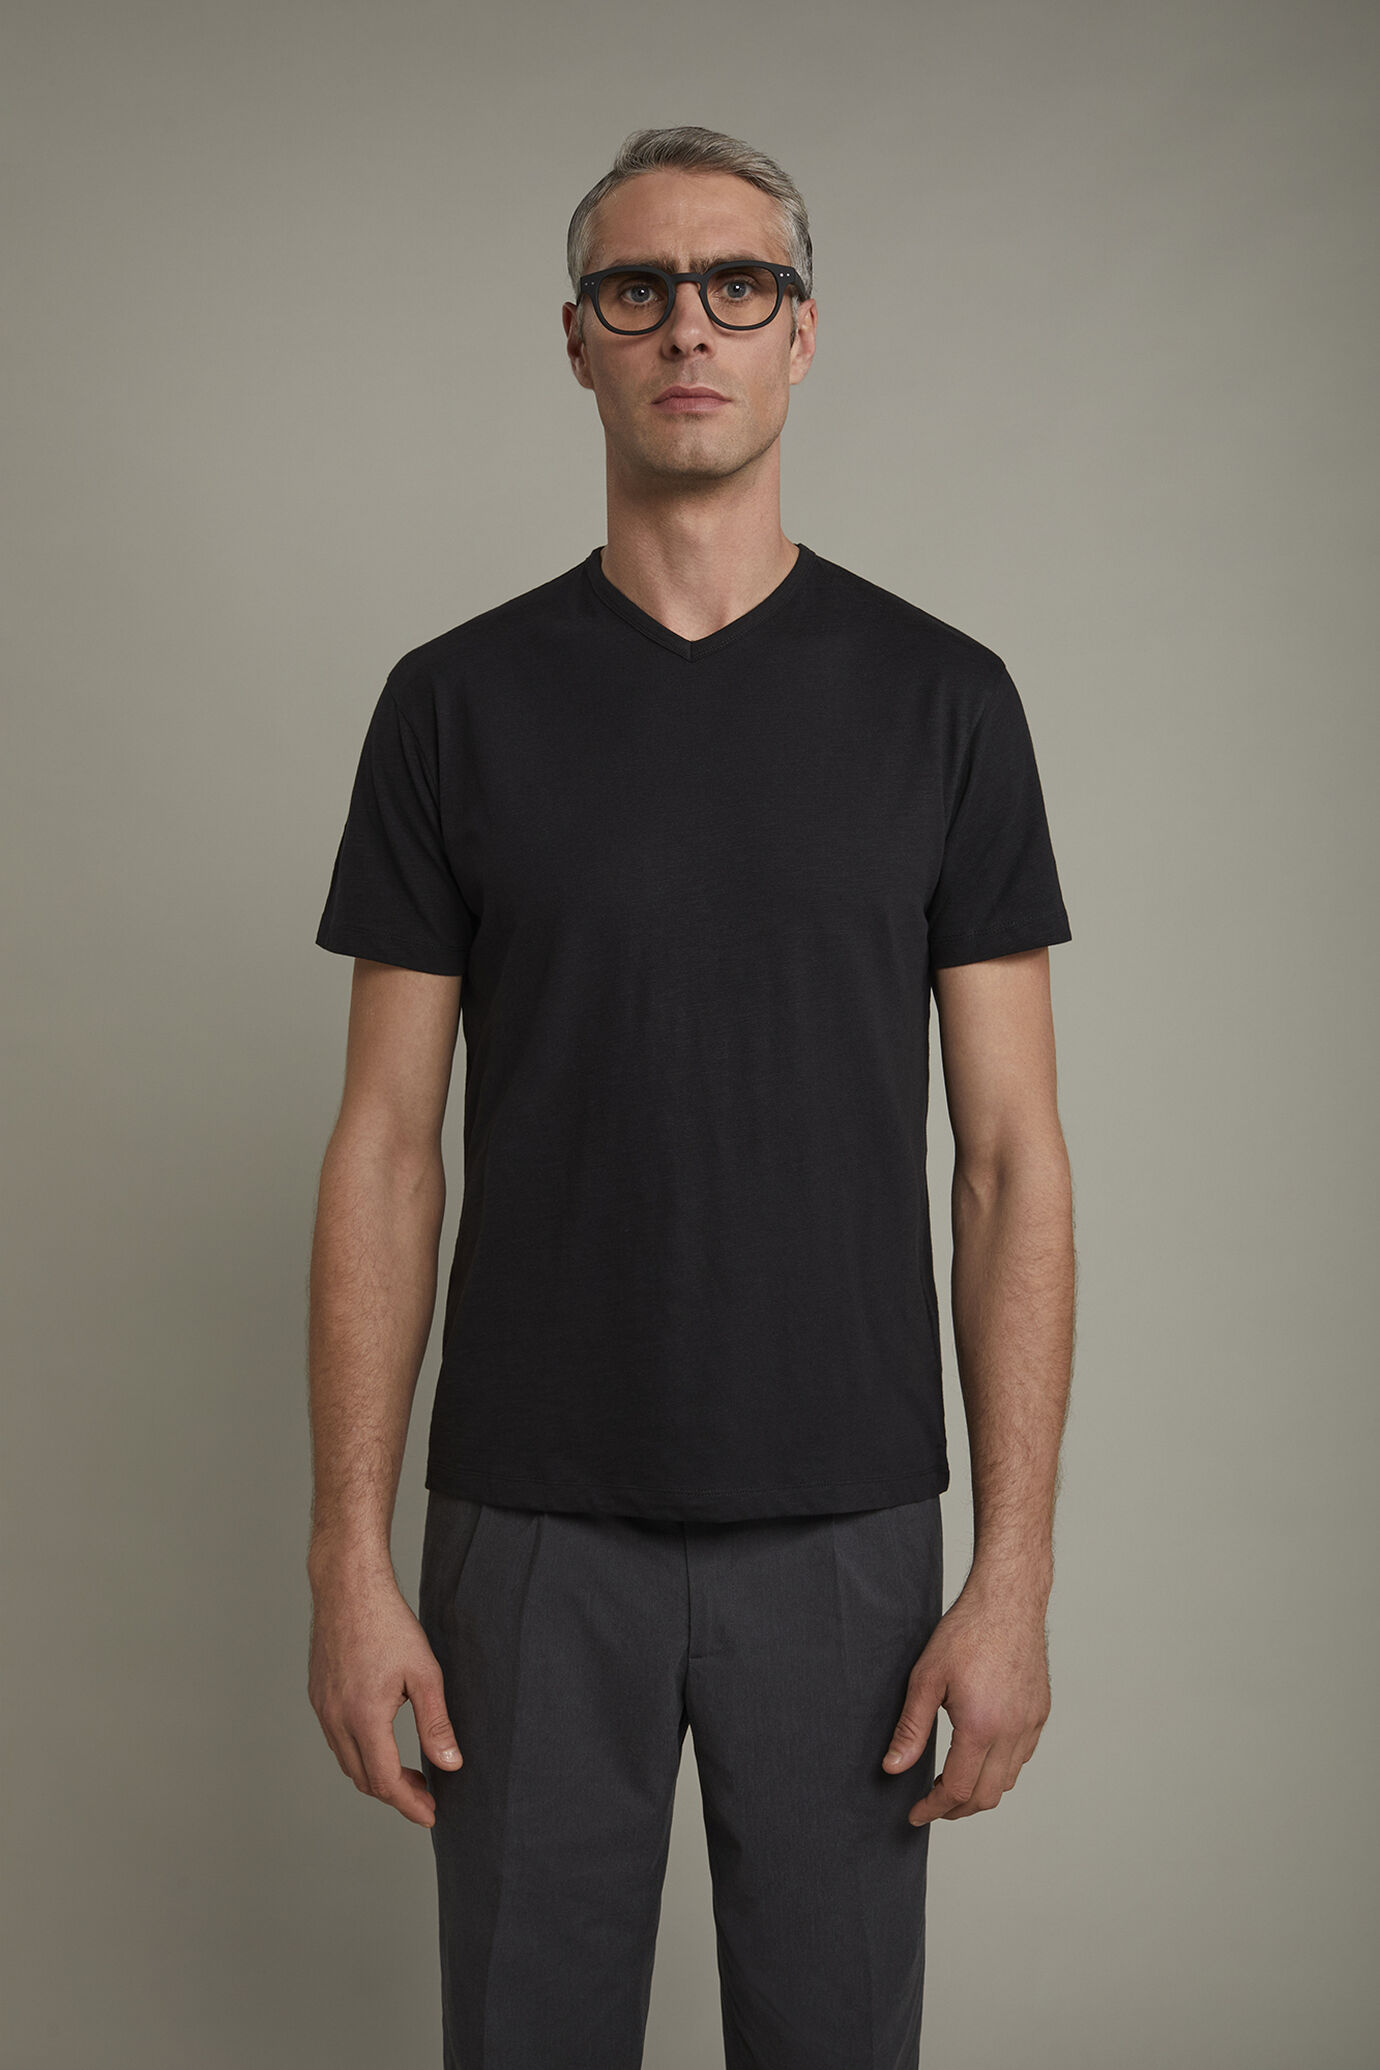 Men’s v-neck t-shirt 100% cotton flamed effect regular fit image number 2